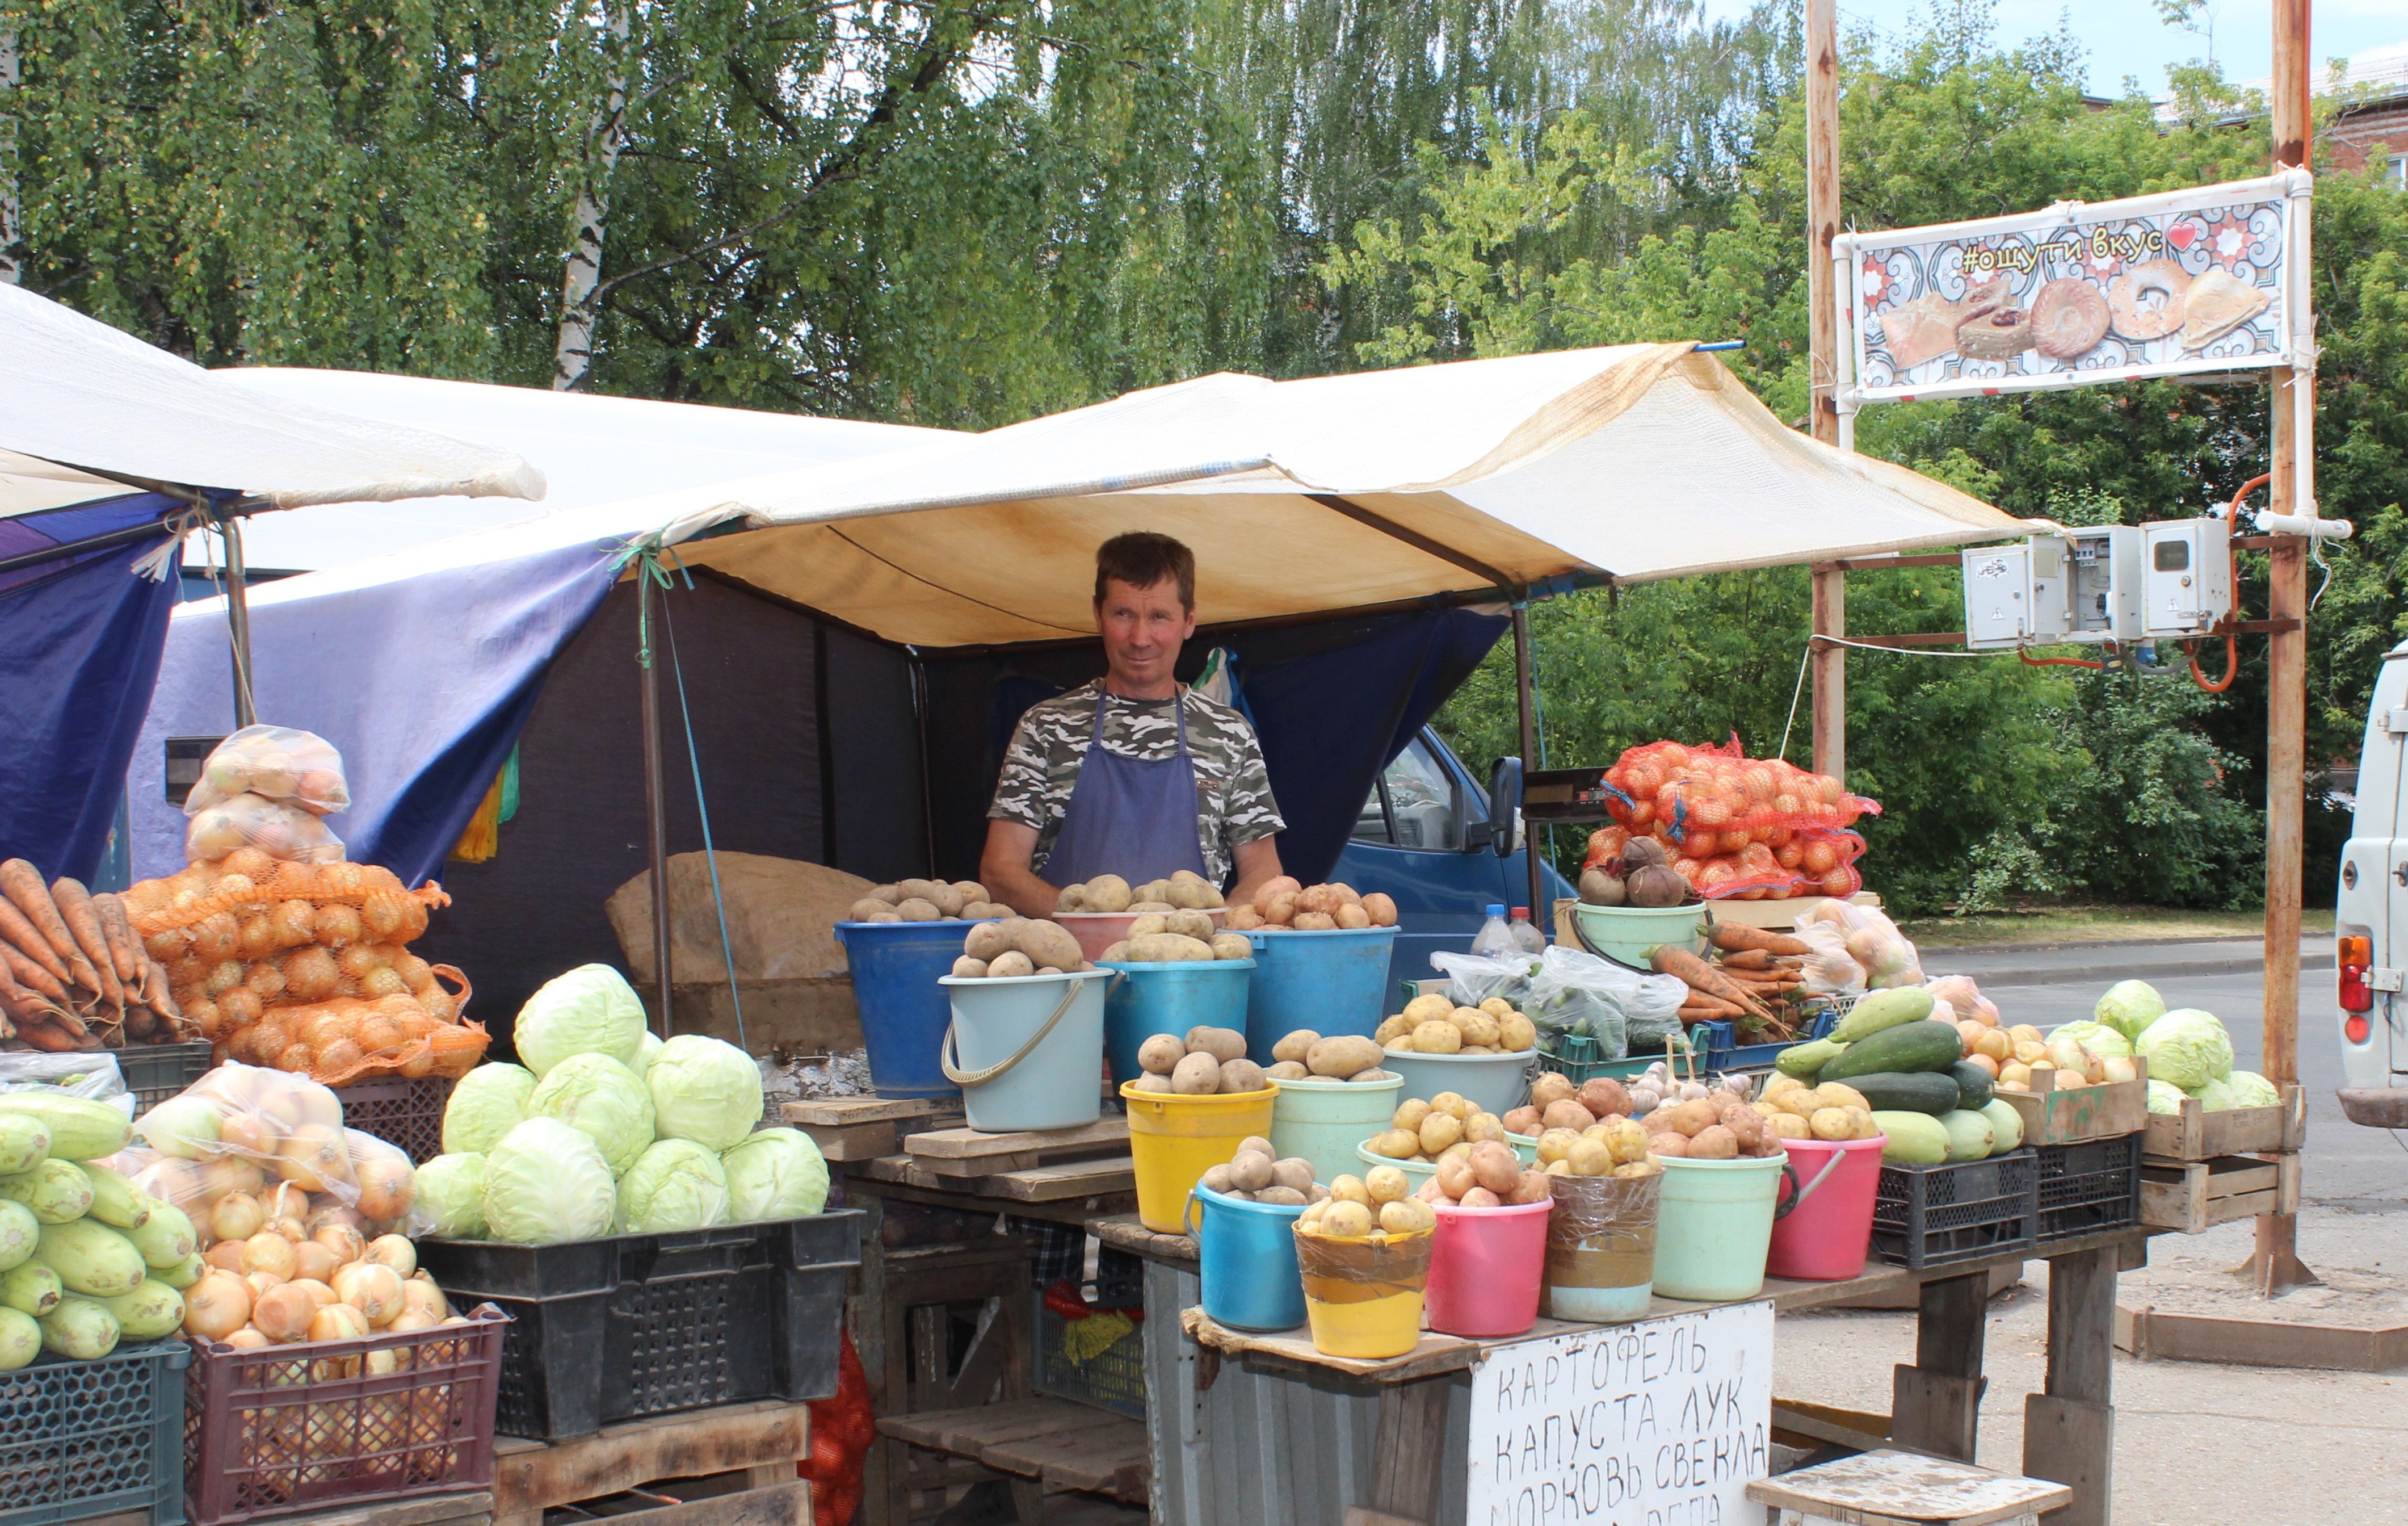 В Ижевске провели общественный мониторинг цен на «борщевой набор»